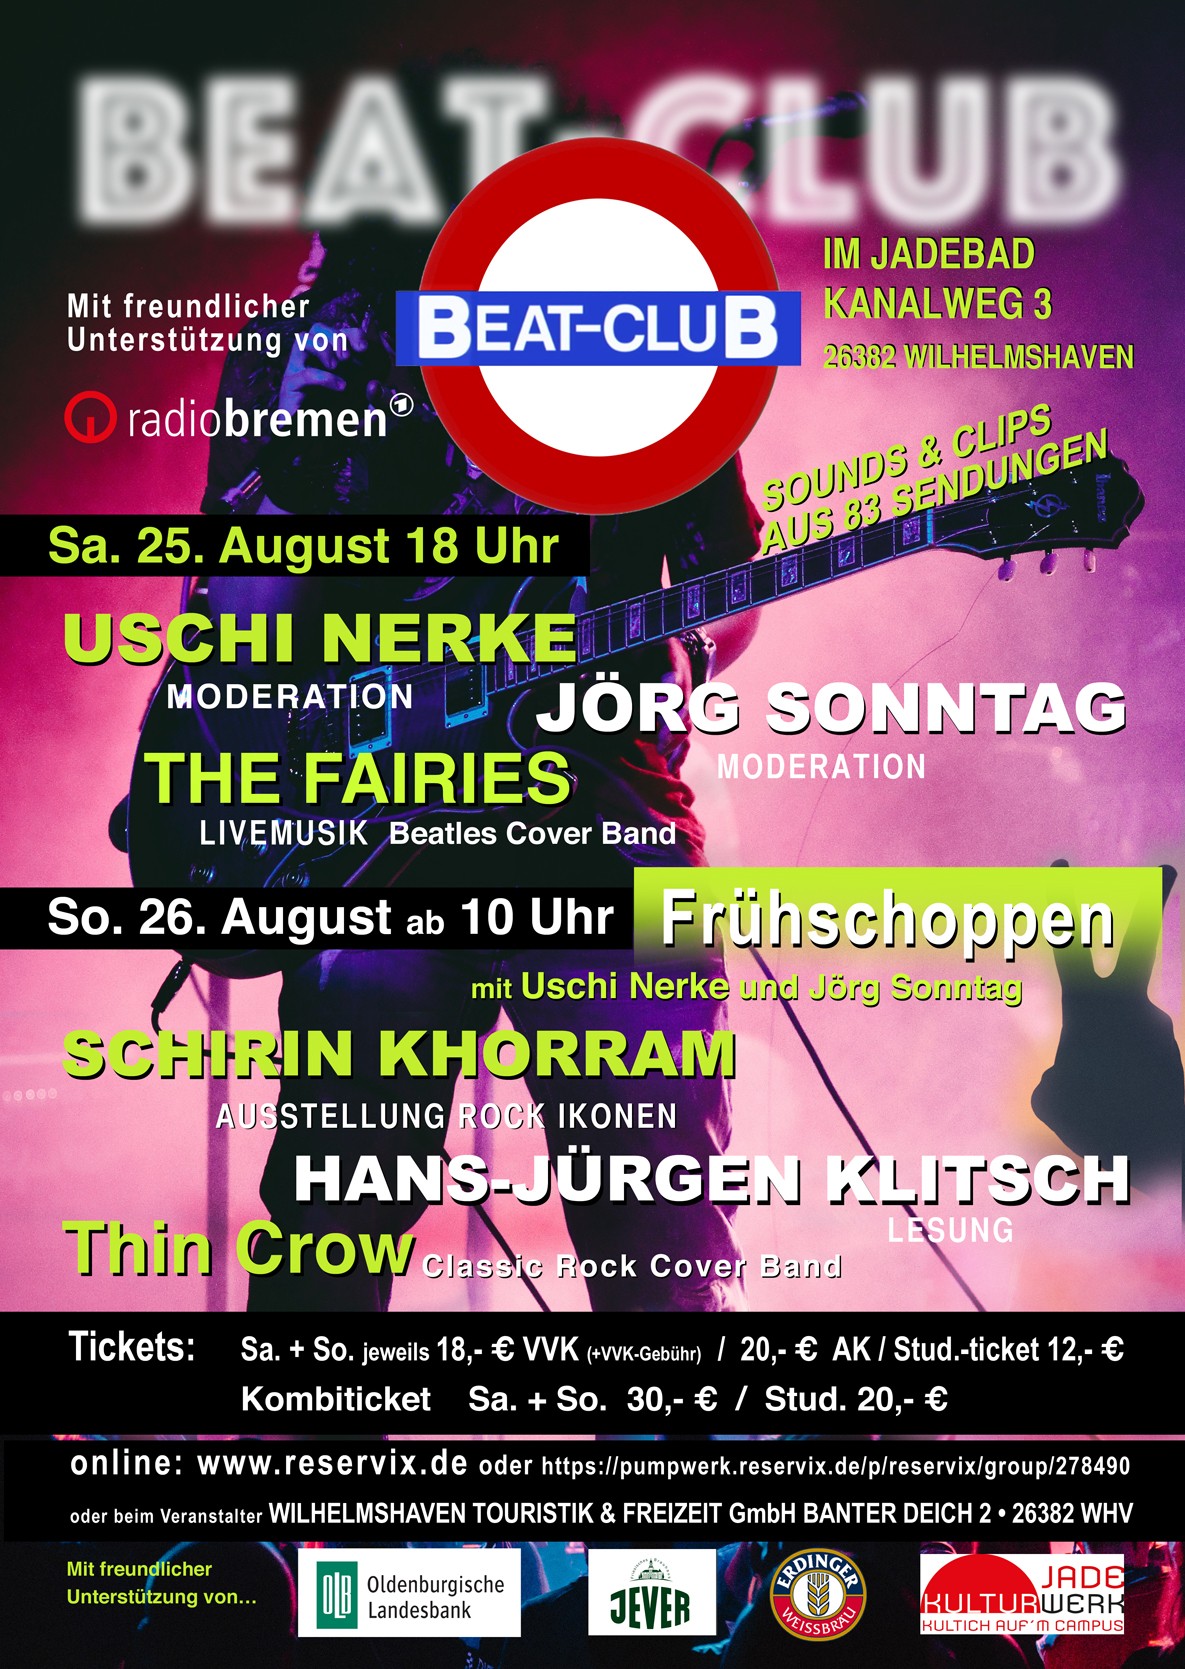 Das Beat-Club-Wochenende im alten Jadebad in Wilhelmshaven